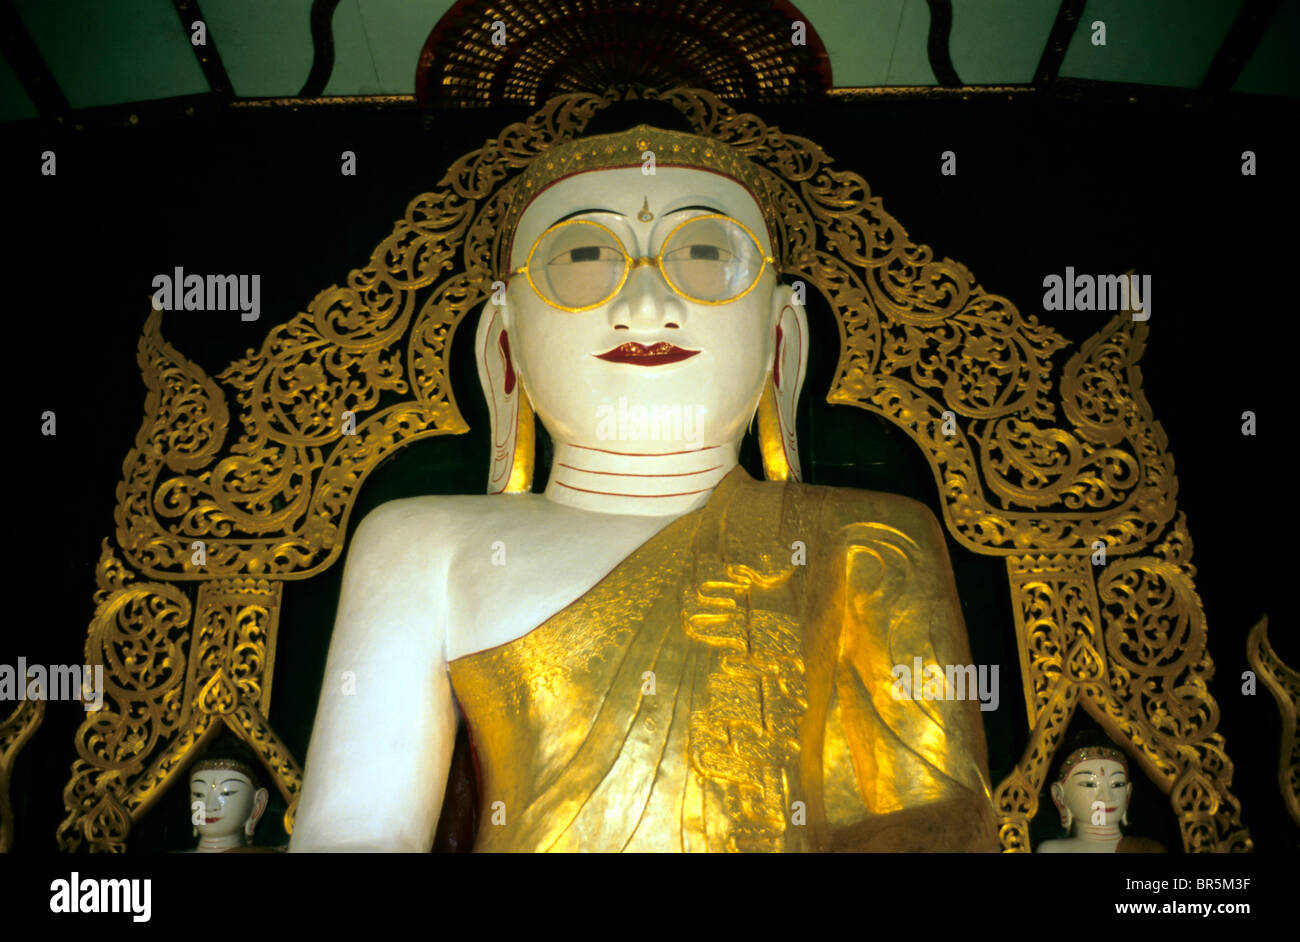 Only world-wide Buddha statue wearing glasses, Shwemyetma Pagoda, Burma, Myanmar, Asia Stock Photo